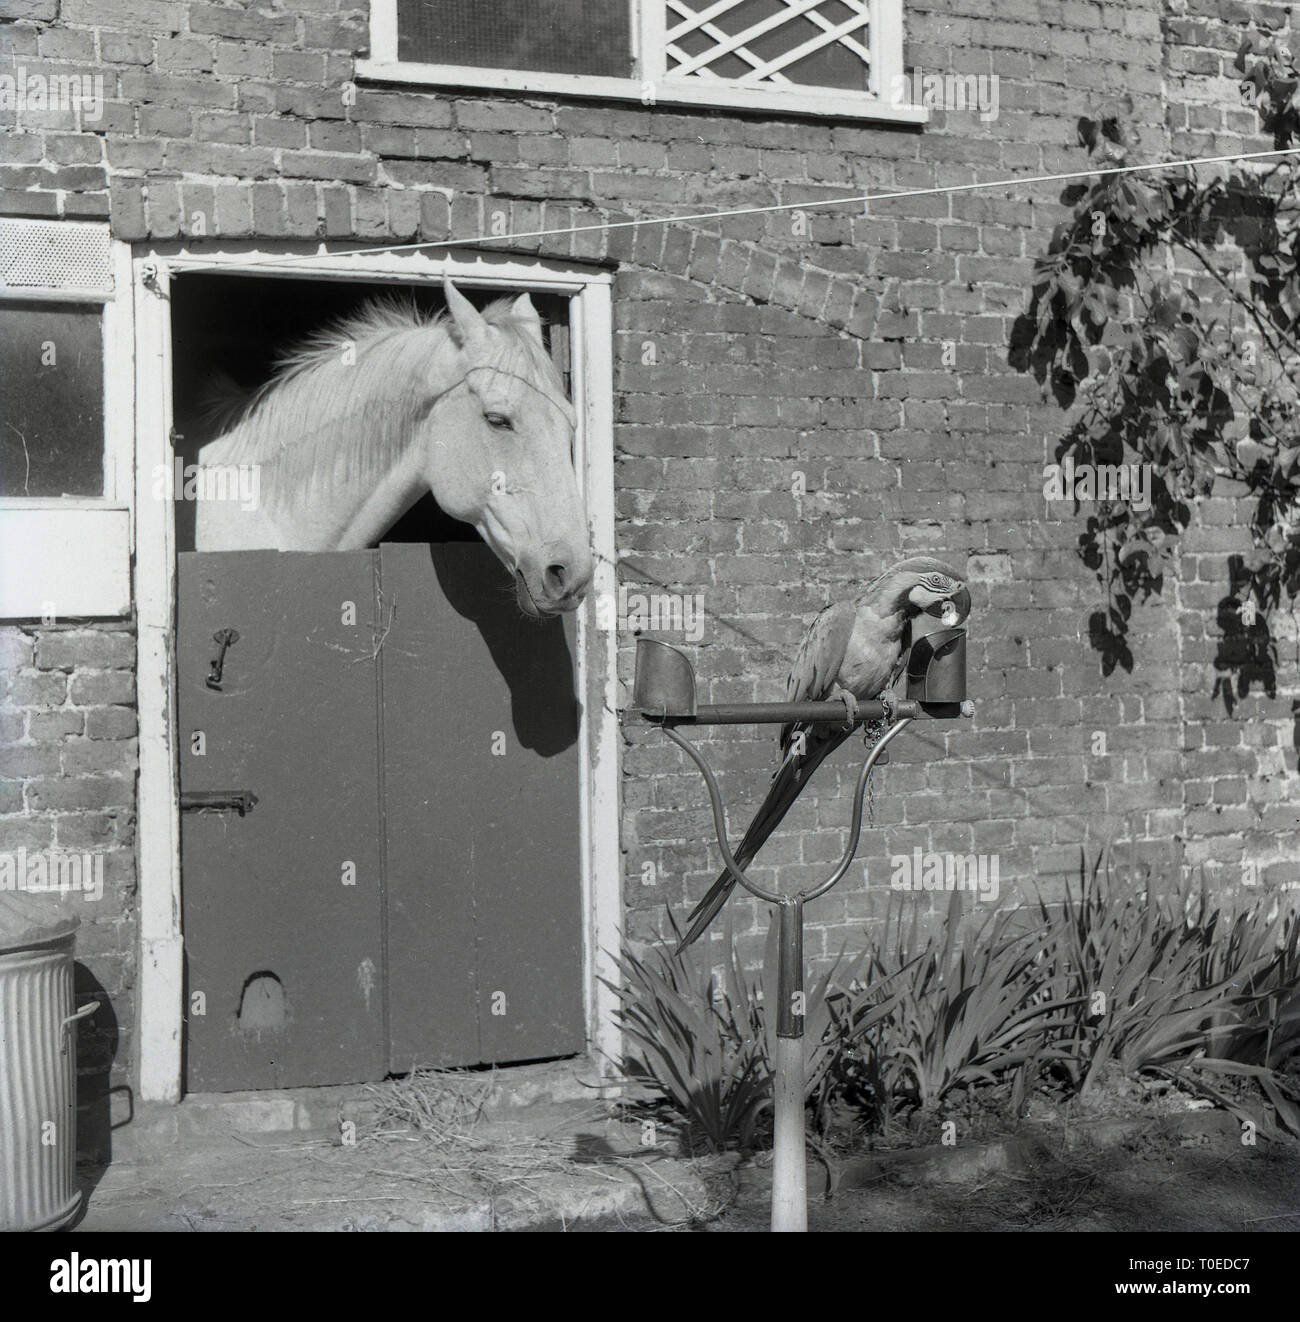 1964, cavallo in maneggio con la sua testa sopra la porta della stalla guardando un pappagallo seduto fuori sul suo pesce persico, Inghilterra, Regno Unito. Foto Stock